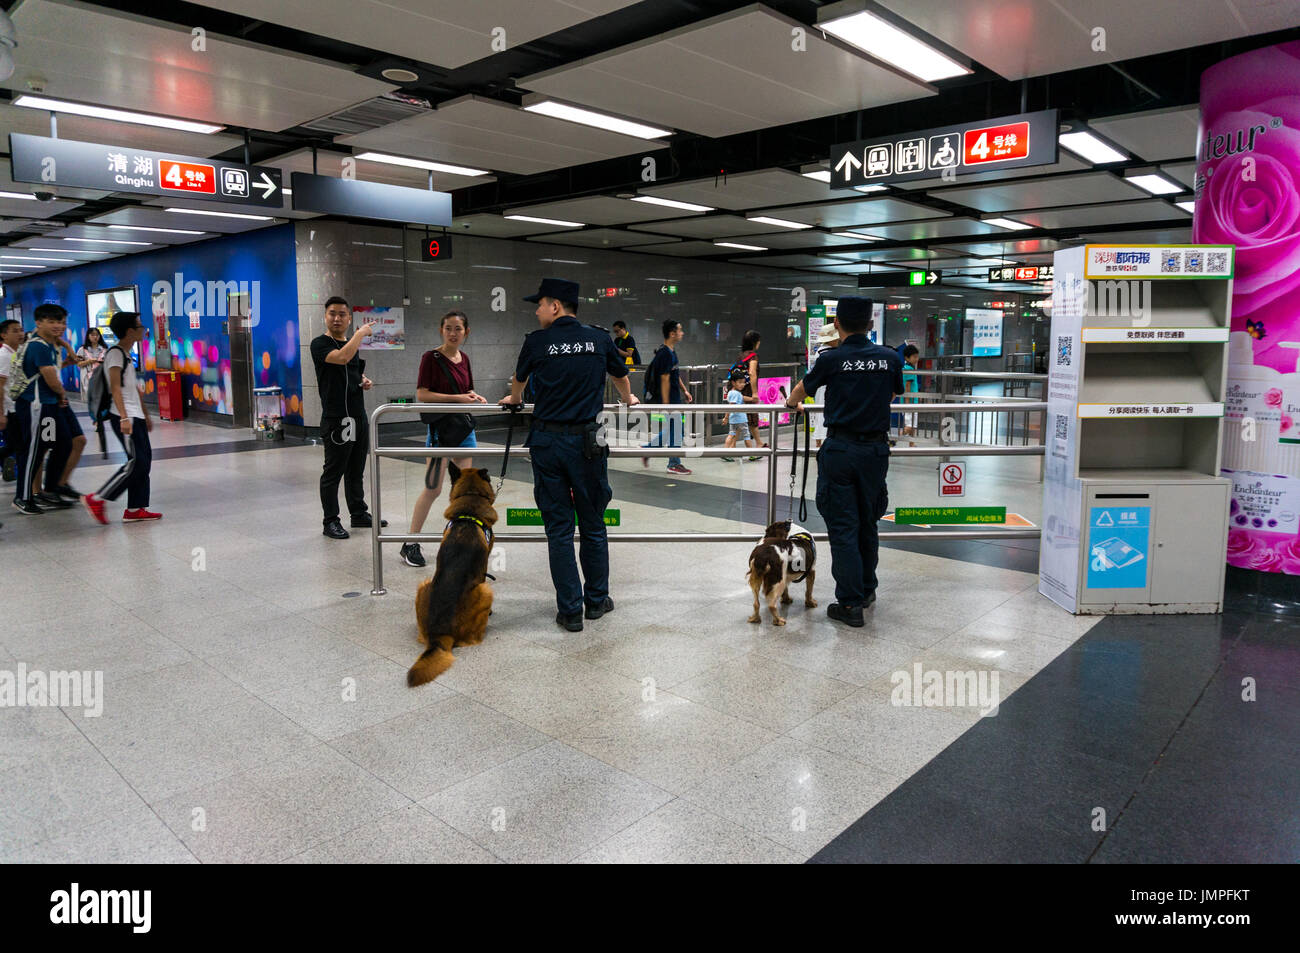 Polizeihunde im Einsatz in der Metro in Shenzhen, China Stockfoto